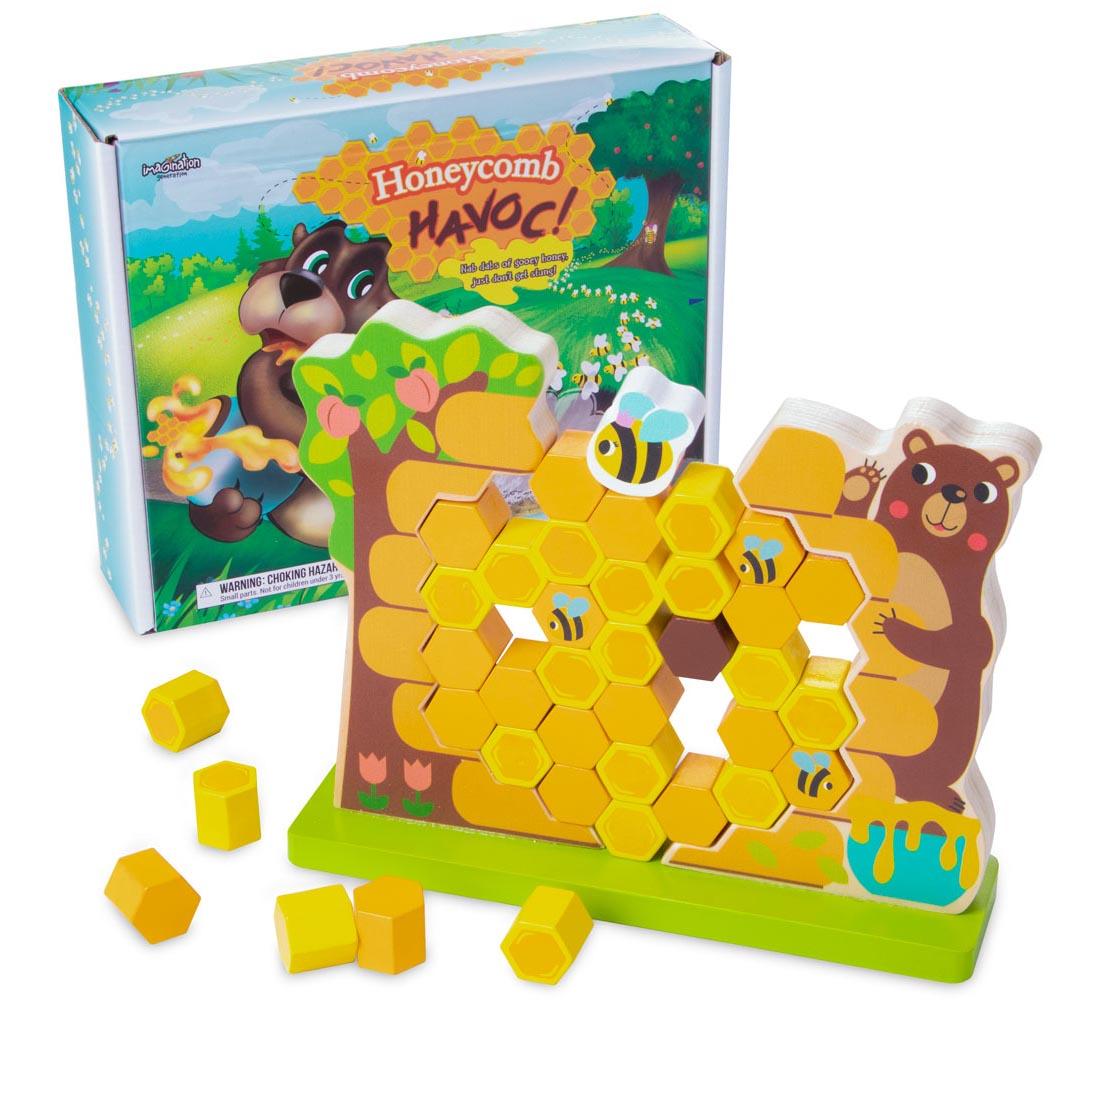 Honeycomb Havoc Game